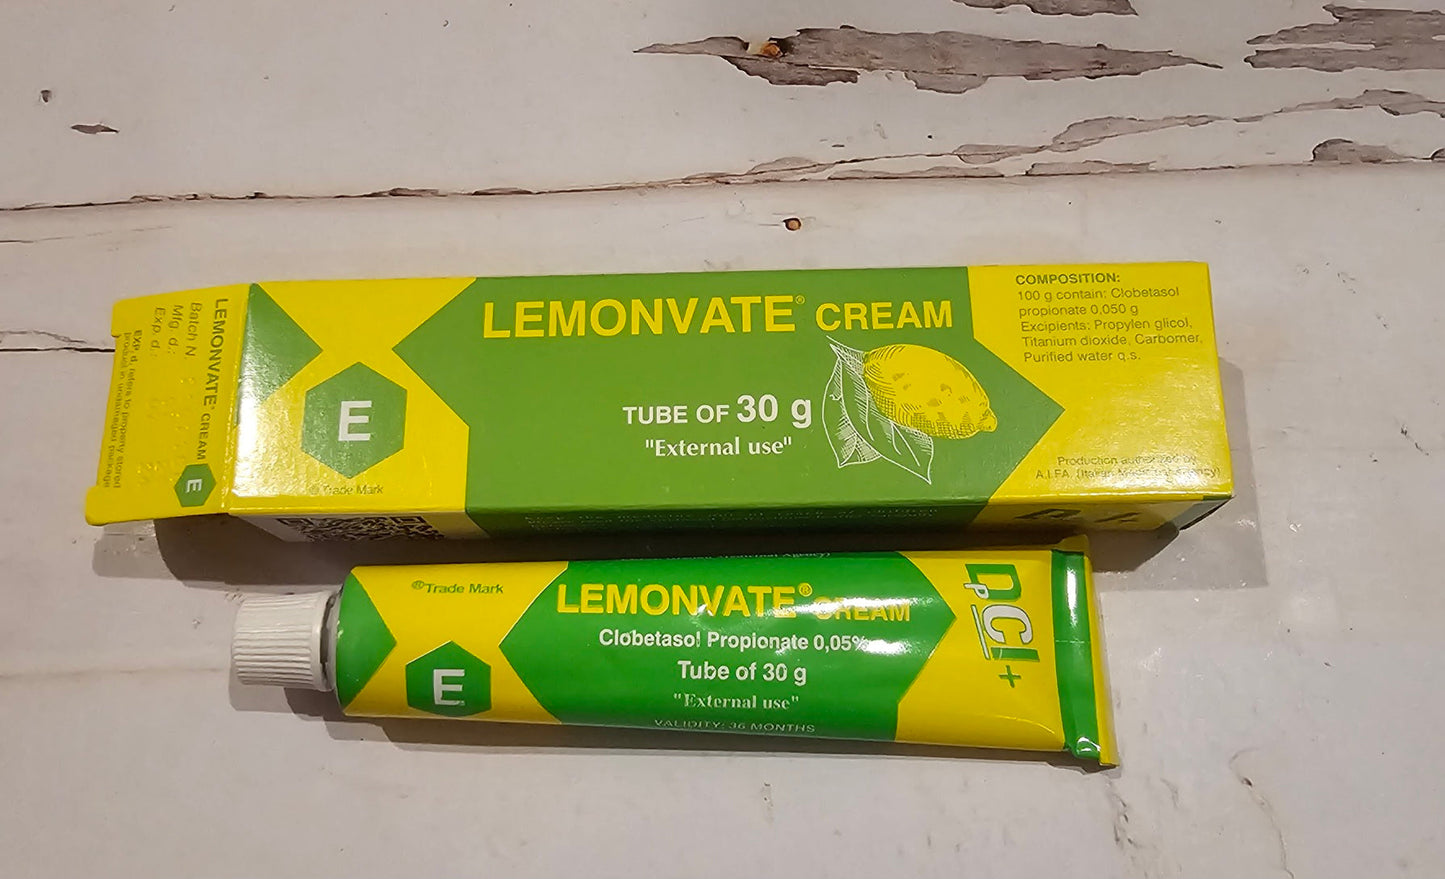 Esapharma Lemonvate Cream